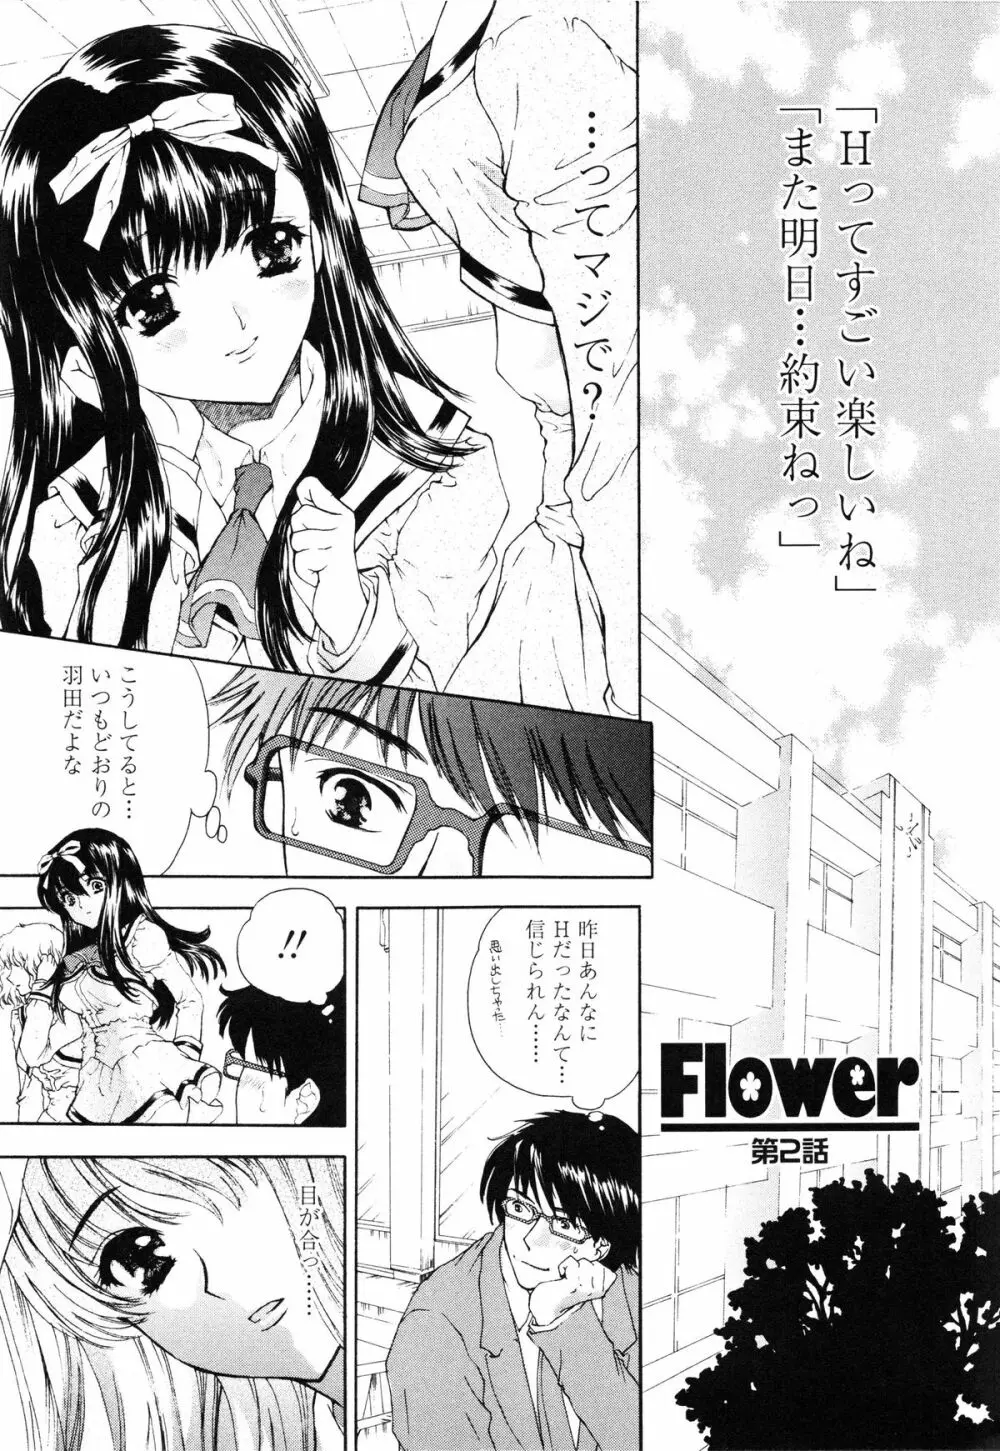 Flower 30ページ